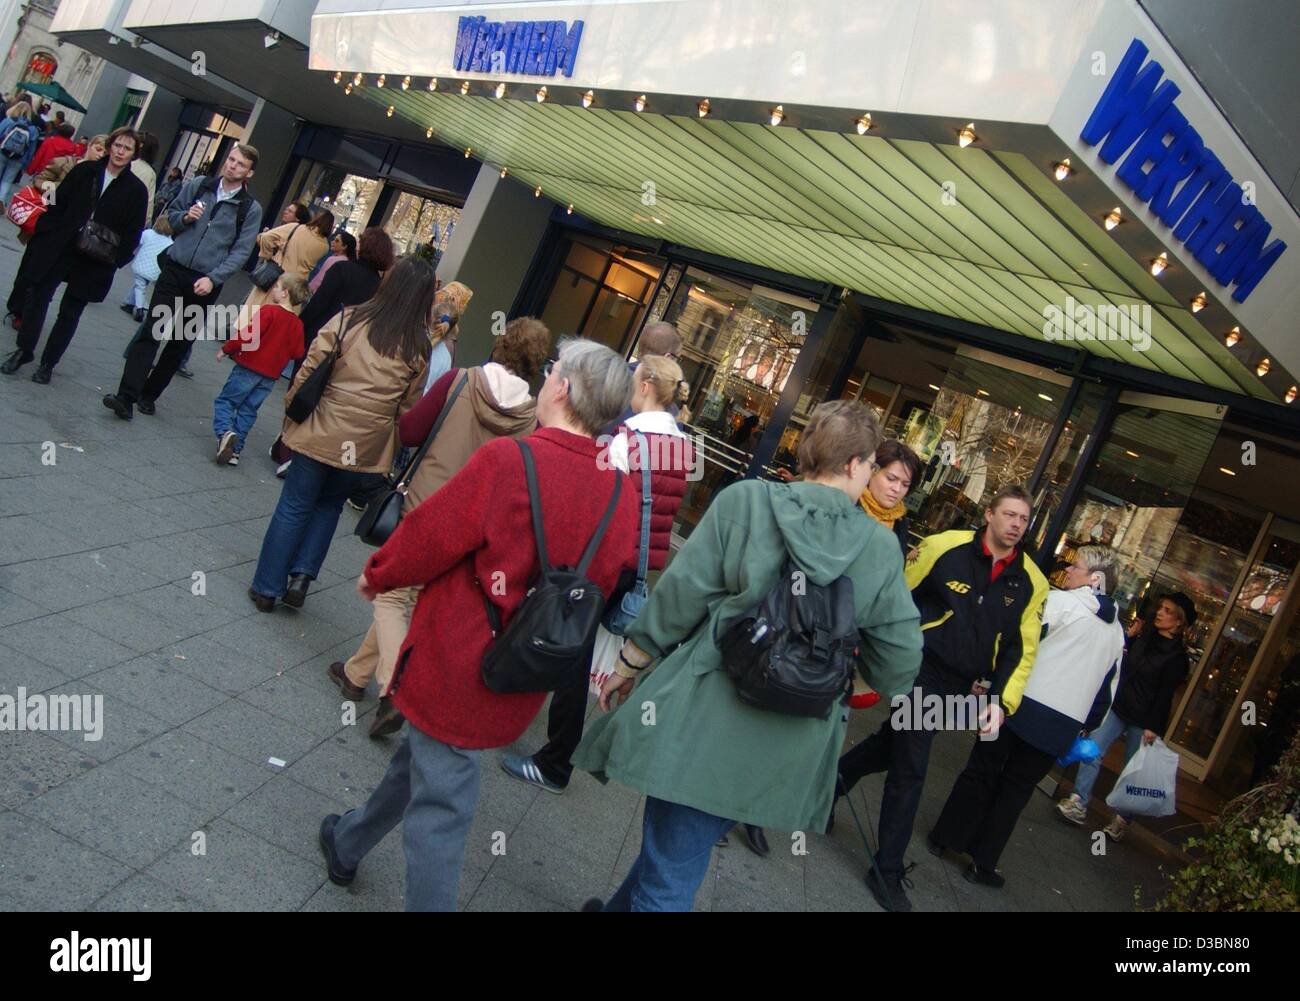 (Dpa) - la gente a piedi passato il Wertheim department store di Berlino, 14 aprile 2003. Il department store, che appartiene alla tedesca department store KarstadtQuelle catena, porta ancora il nome del suo fondatore. Attualmente, U.S. Giudice della Corte federale è la pesatura Karstadt-Quelle richieste a buttare fuori un Foto Stock